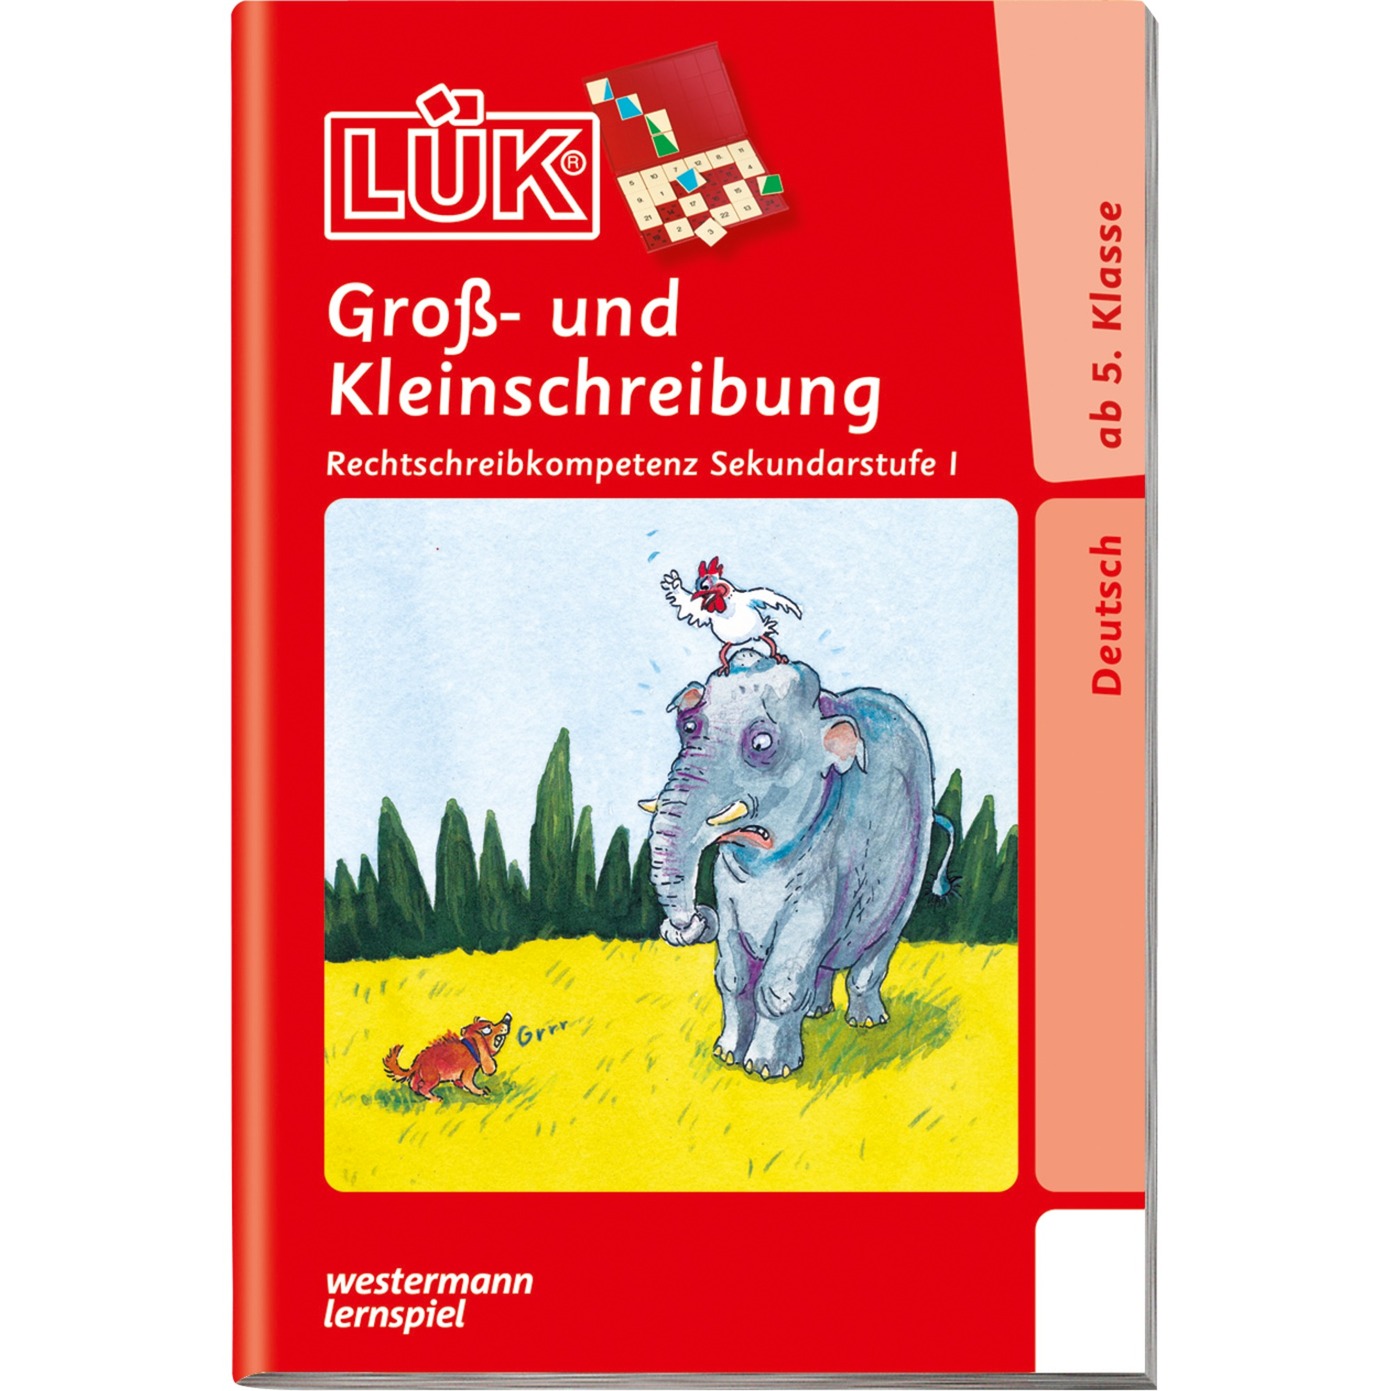 Groß- und Kleinschreibung ab Klasse 5 książka dla dzieci, Książki edukacyjne